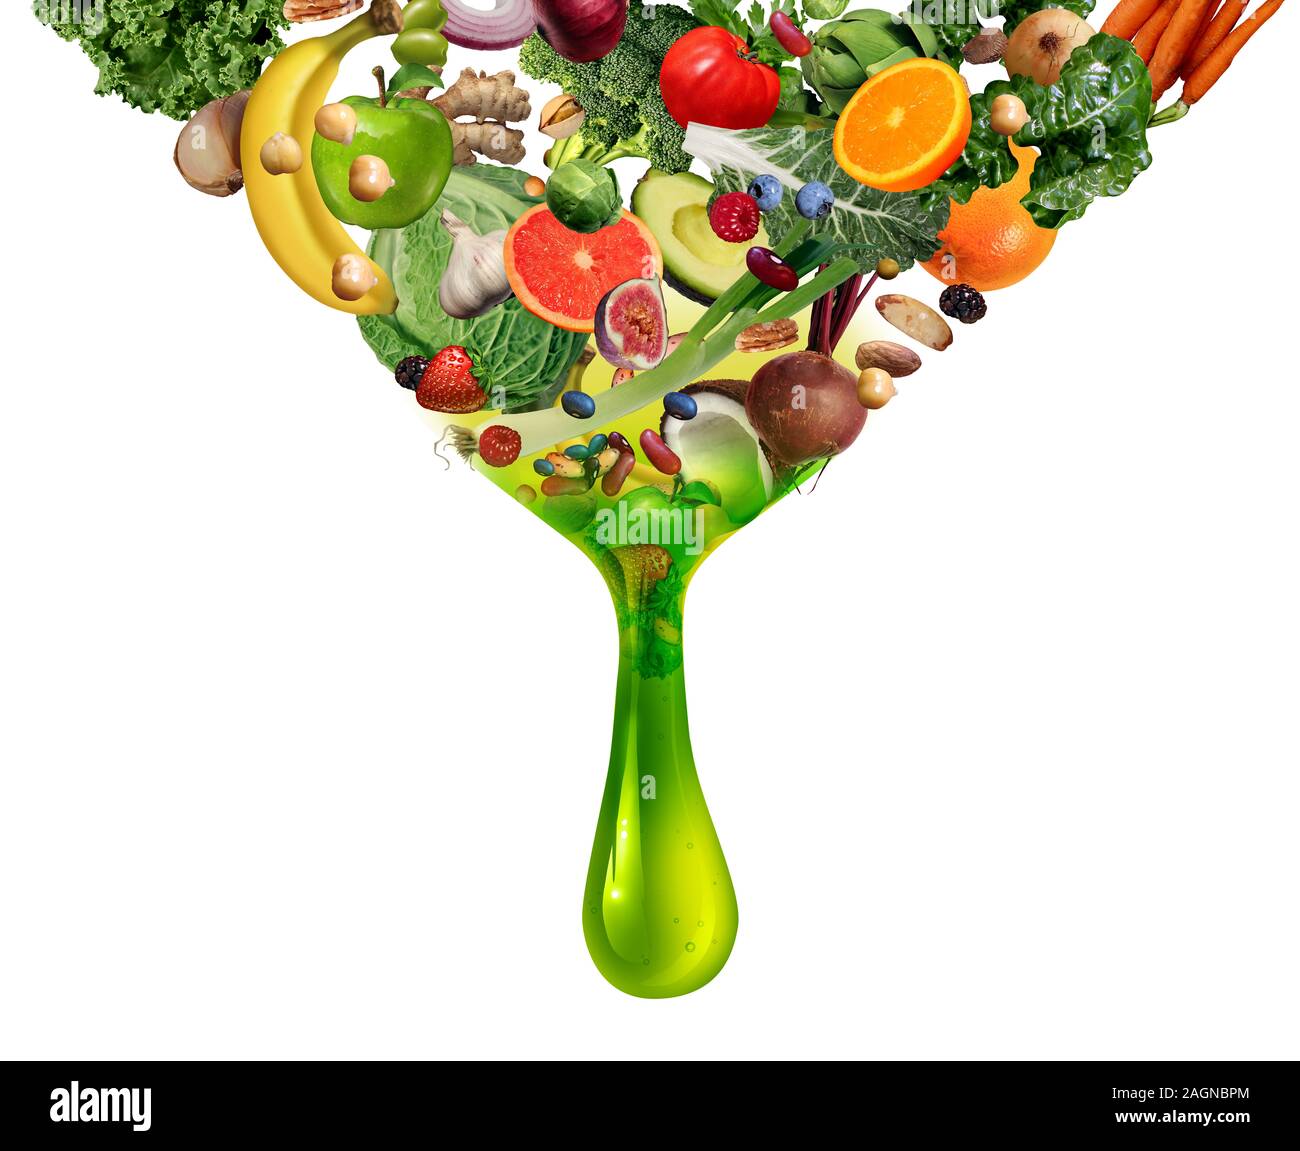 Natürliche Saft Vitamin diätetische detox Drink als Tropfen mit Obst Gemüse Nüsse und Bohnen in einem nahrhaften Getränks als natürliche Medizin Gesundheit. Stockfoto